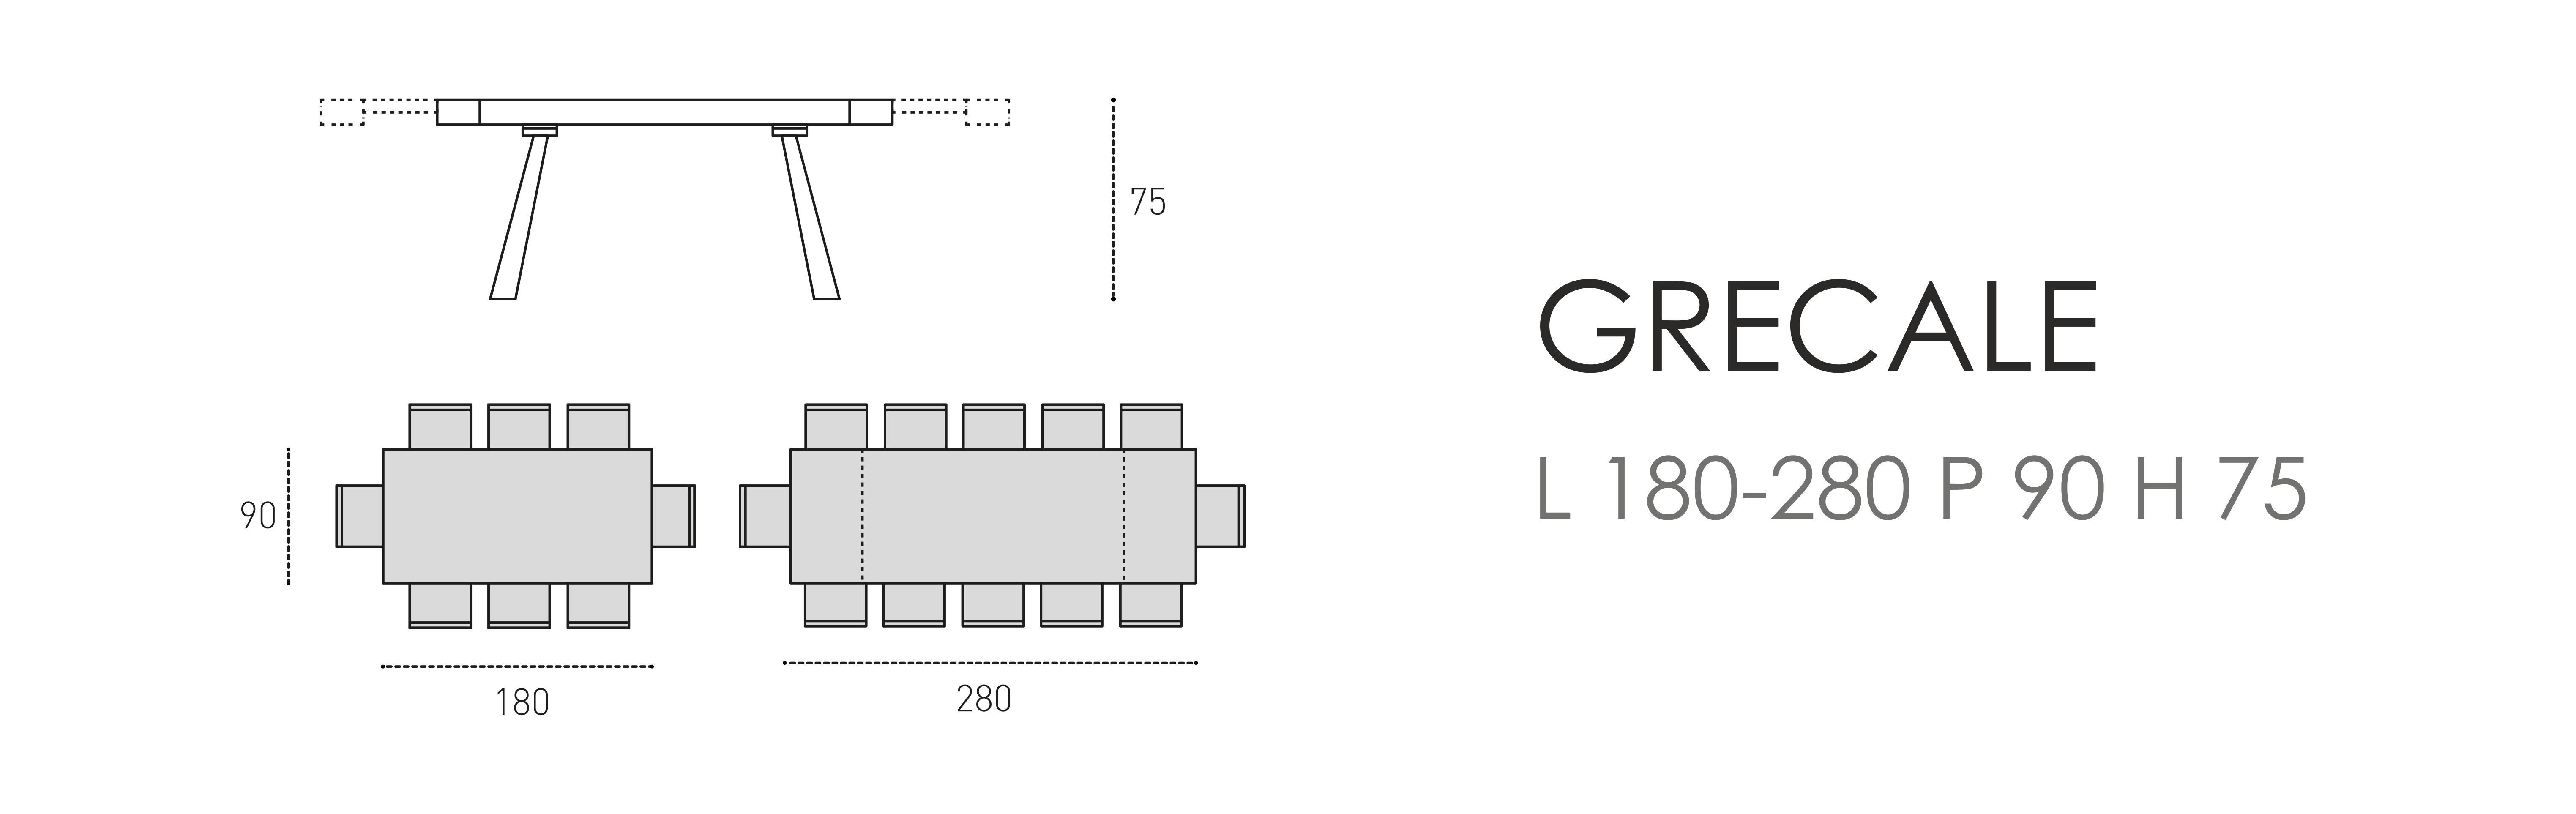 Grecale L 180-280 P 90 H 75